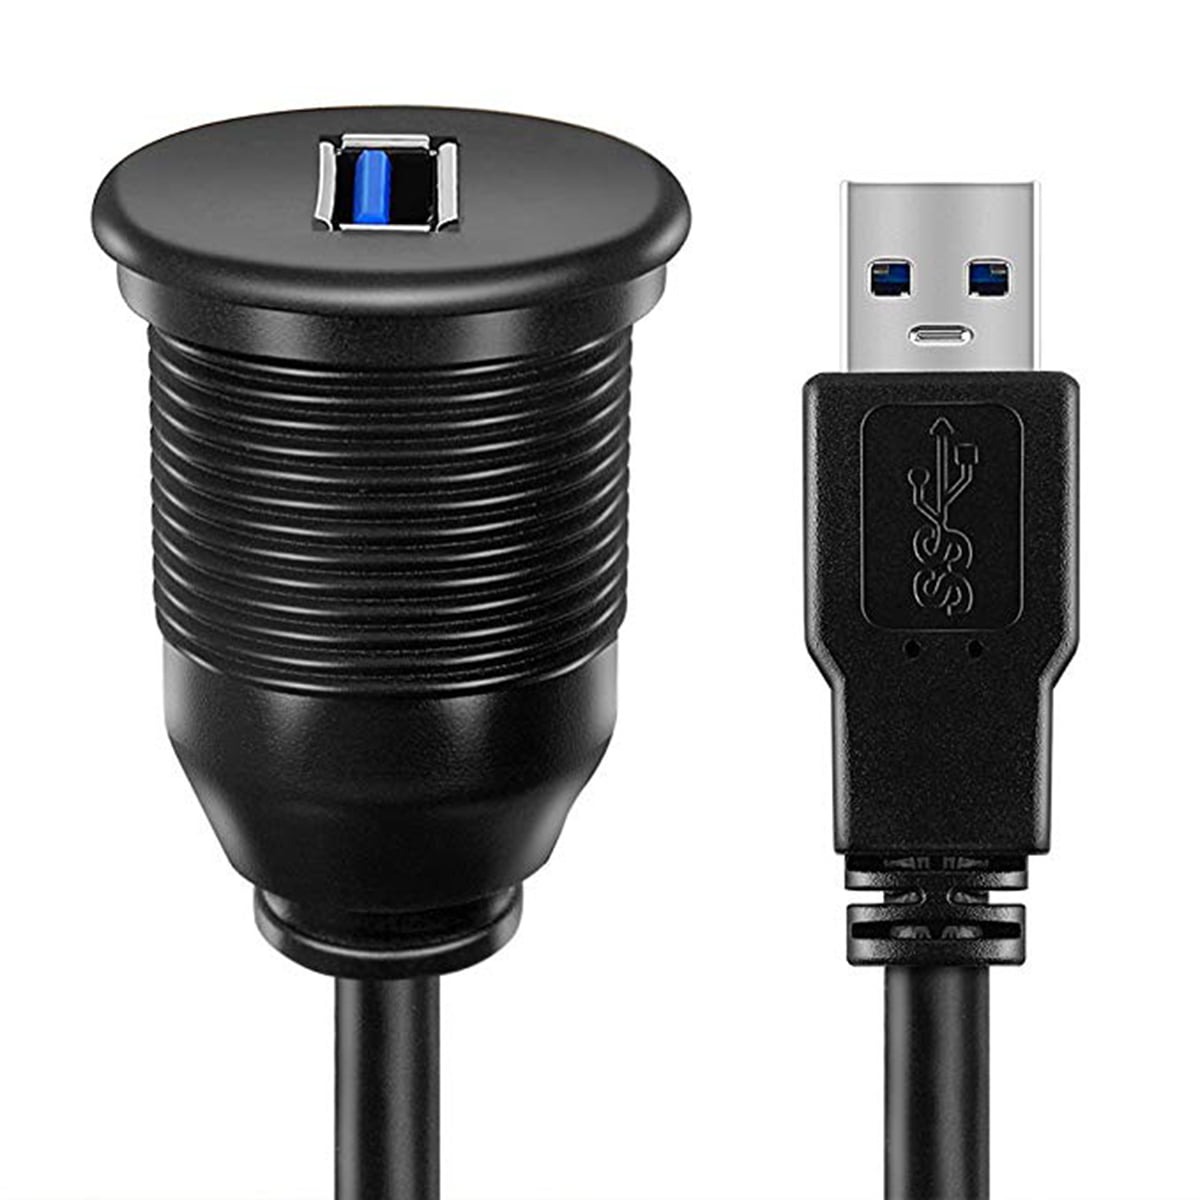 Cable Length: 1m, Color: Black Cables USB Panel USB Mount Cable USB 2.0 Extension Converter Dash Flush Mount Cable Panel Mount Cable for Car/Boat/Motorcycle 